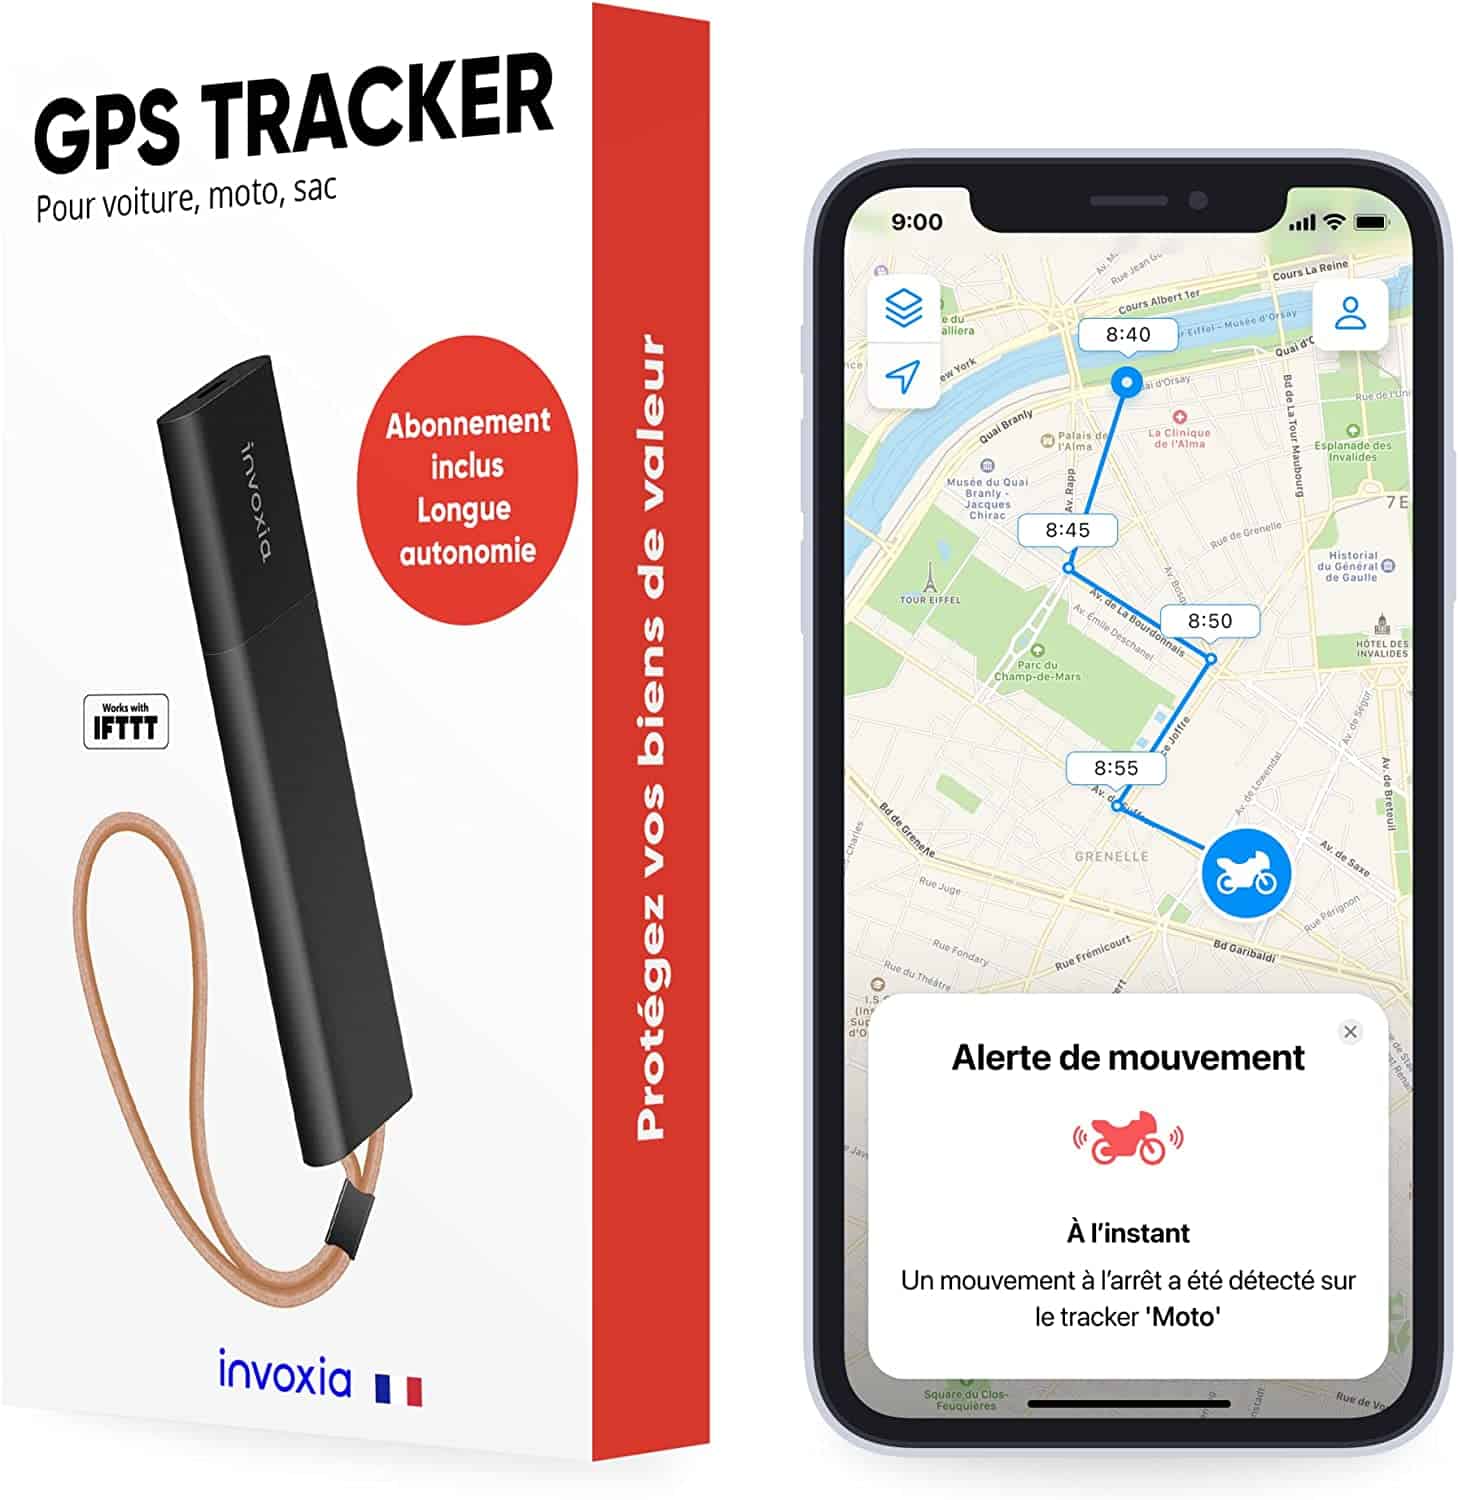 Le traceur GPS moto par excellence